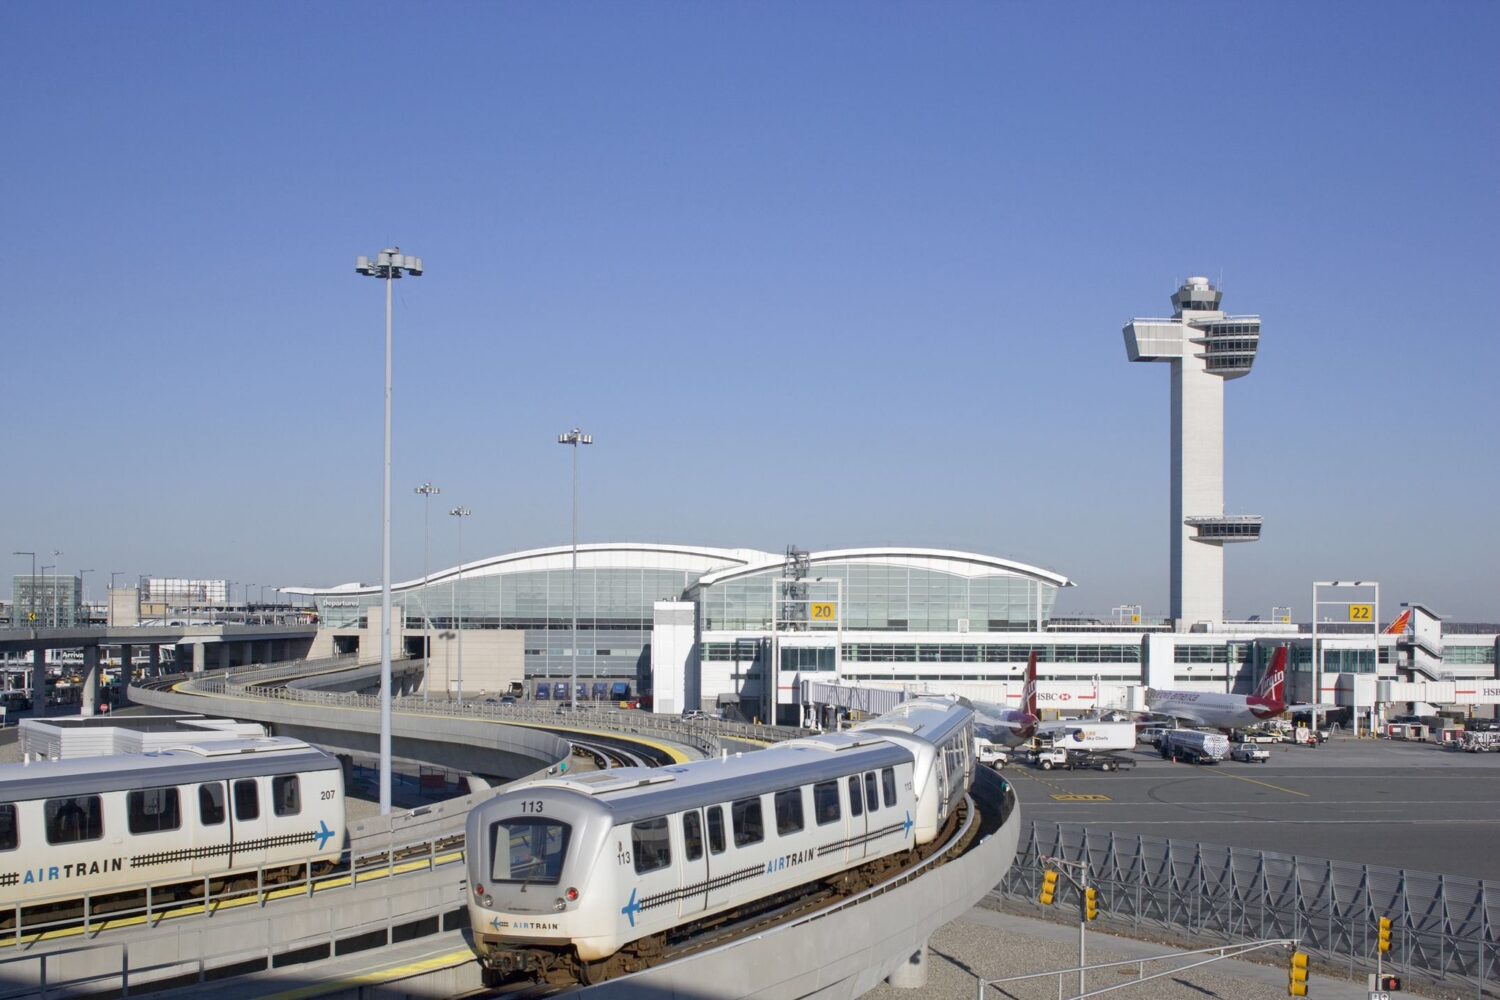 vista da área externa do aeroporto internacional JFK de Nova York mostrando duas trilhas com carros de metrô à esquerda da imagem e à direita, alguns aviões taxiando na pista de pouso. Ao fundo é possível ver uma torre de controle sobre um céu azul e sem nuvens